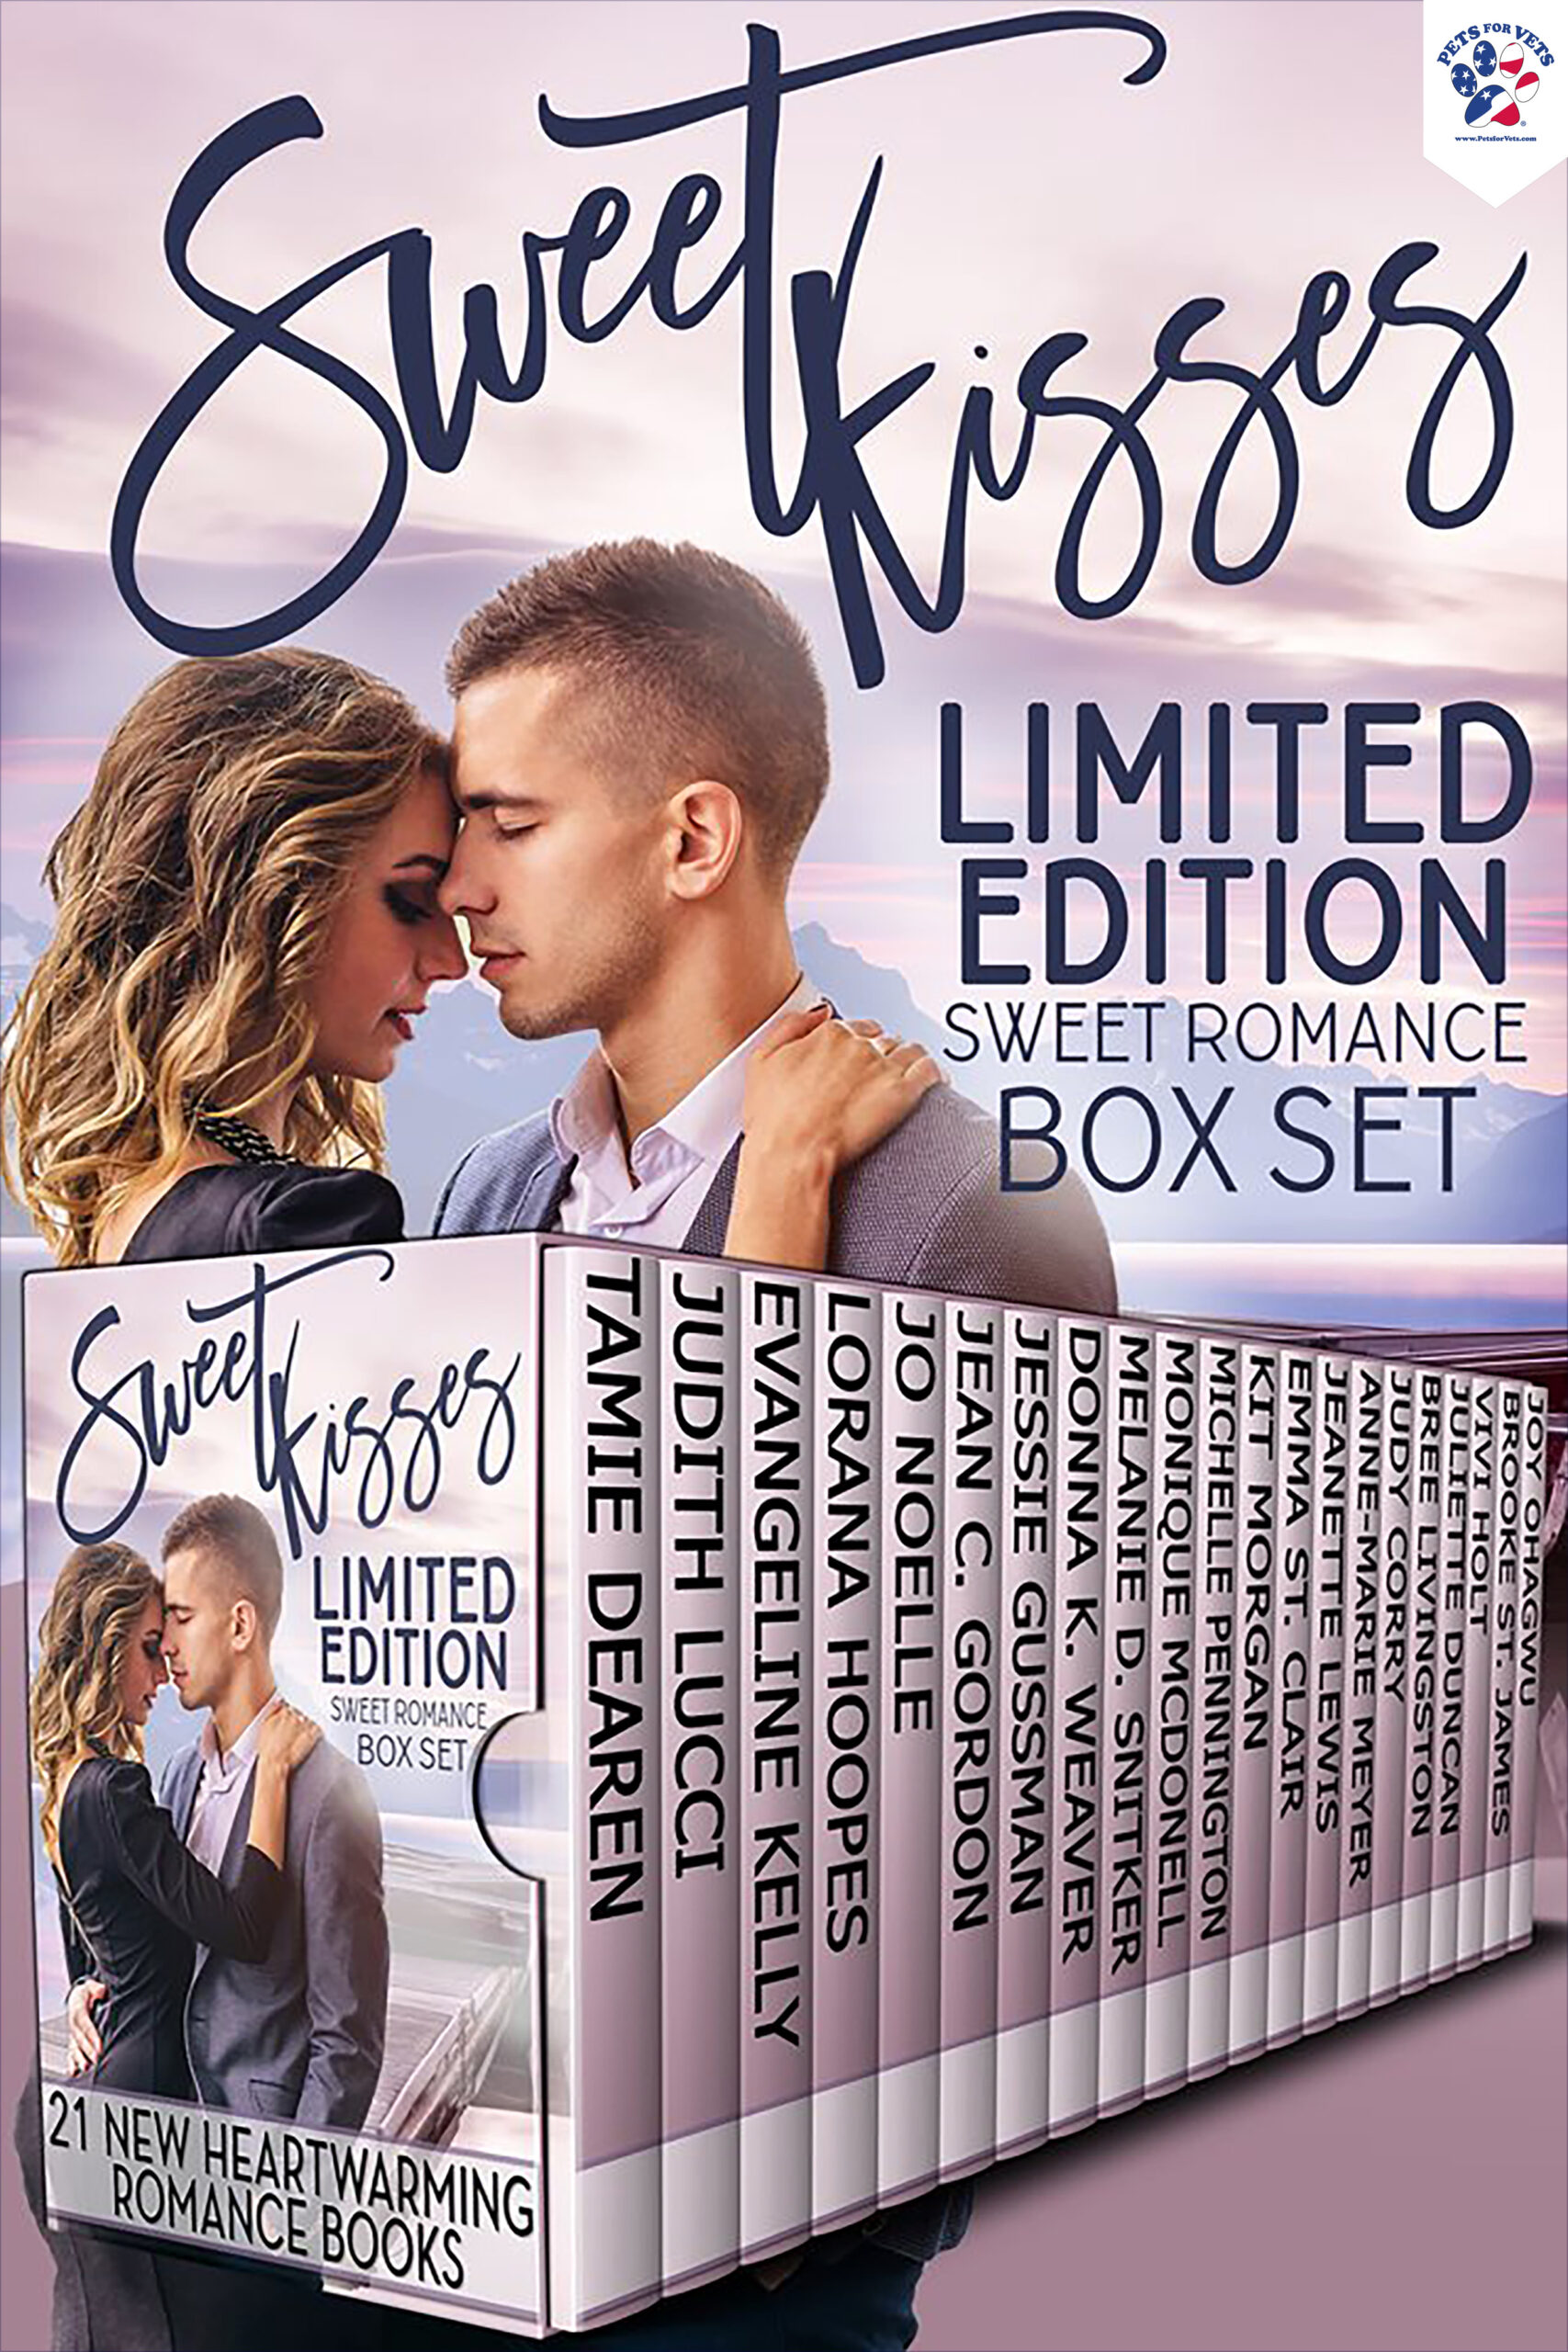 Sweet Kisses Limited Edition Sweet Romance Box Set by Tamie Dearen, et. al.